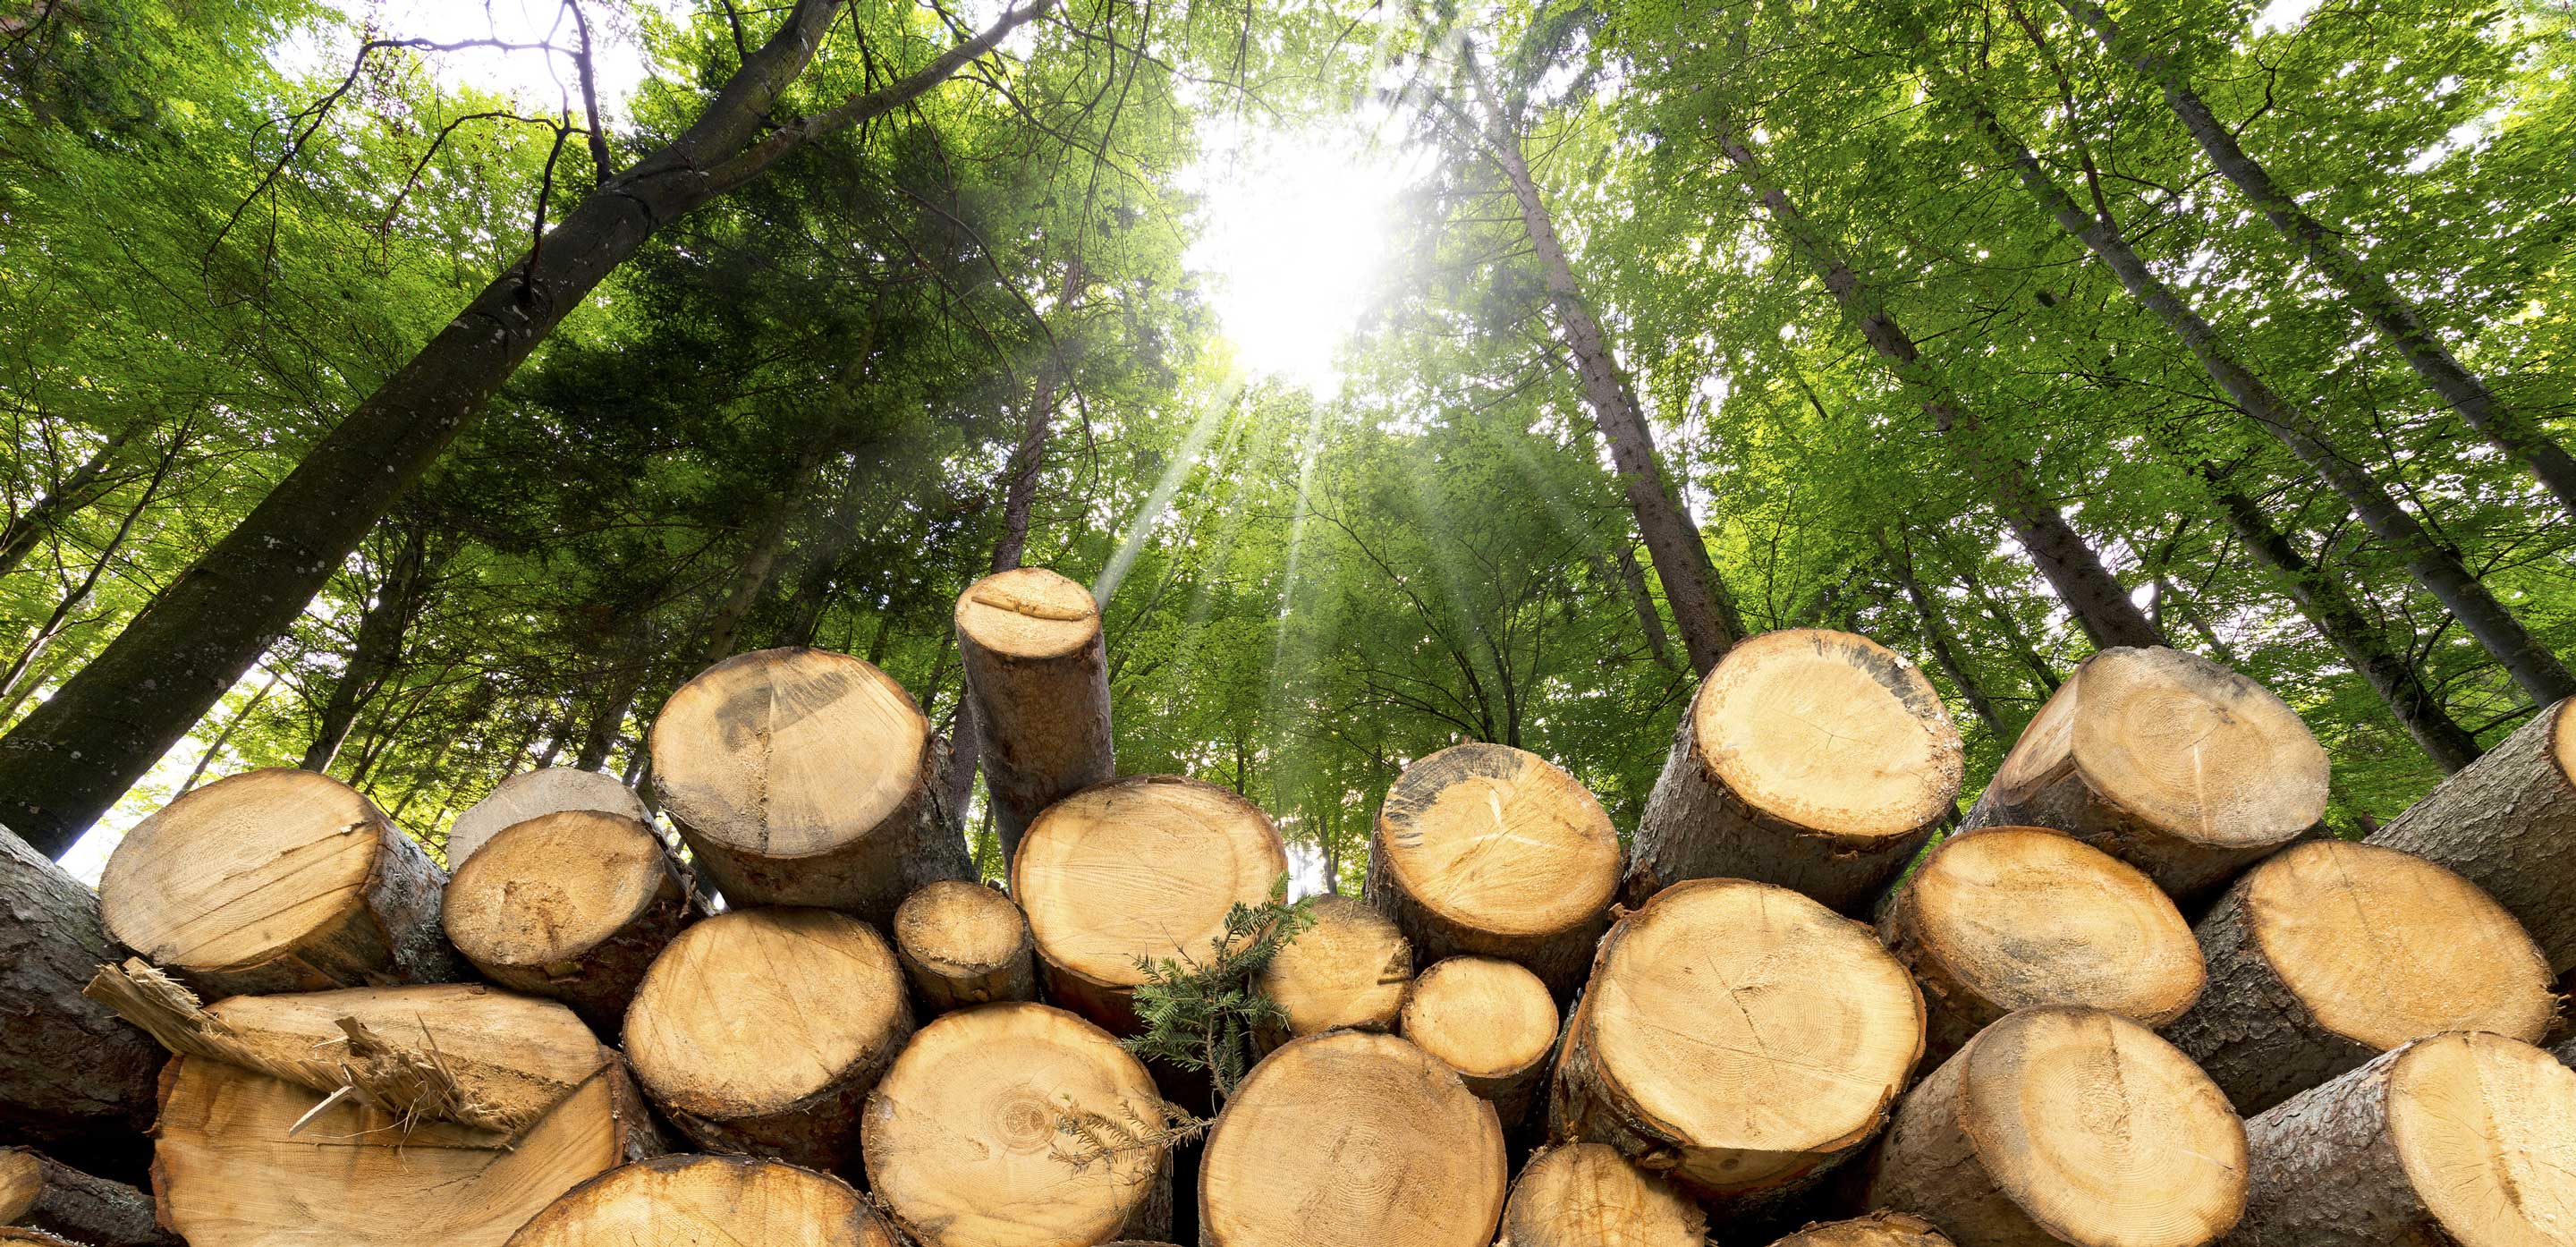 Σημασία της χρήσης ξύλου που παράγεται με βιώσιμο τρόπο